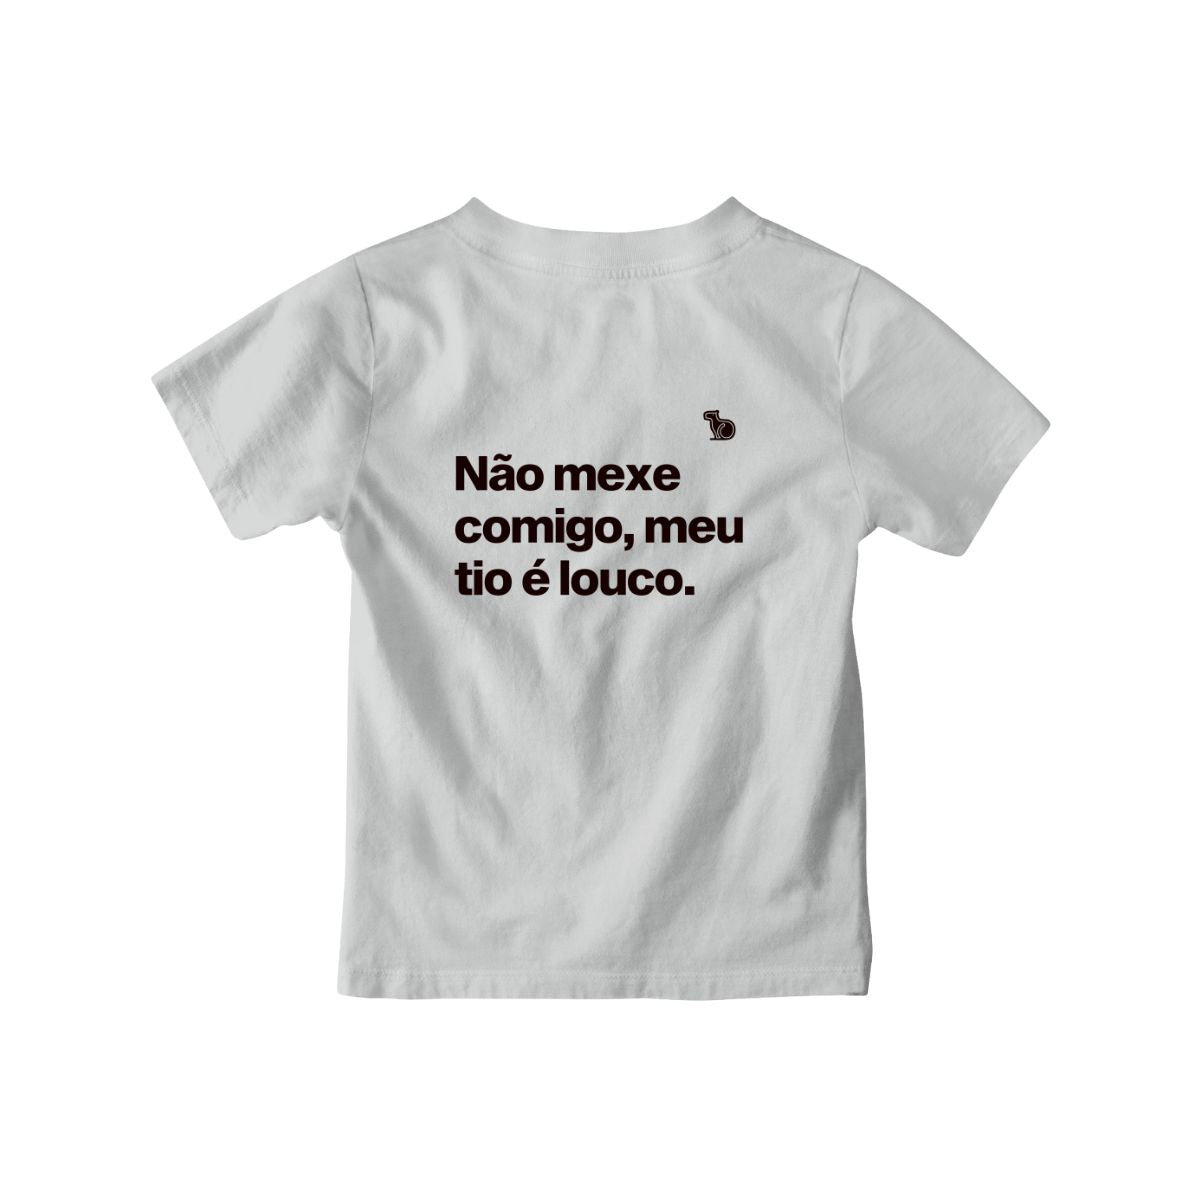 Camiseta infantil cinza com a frase "Não mexe comigo, meu tio é louco."